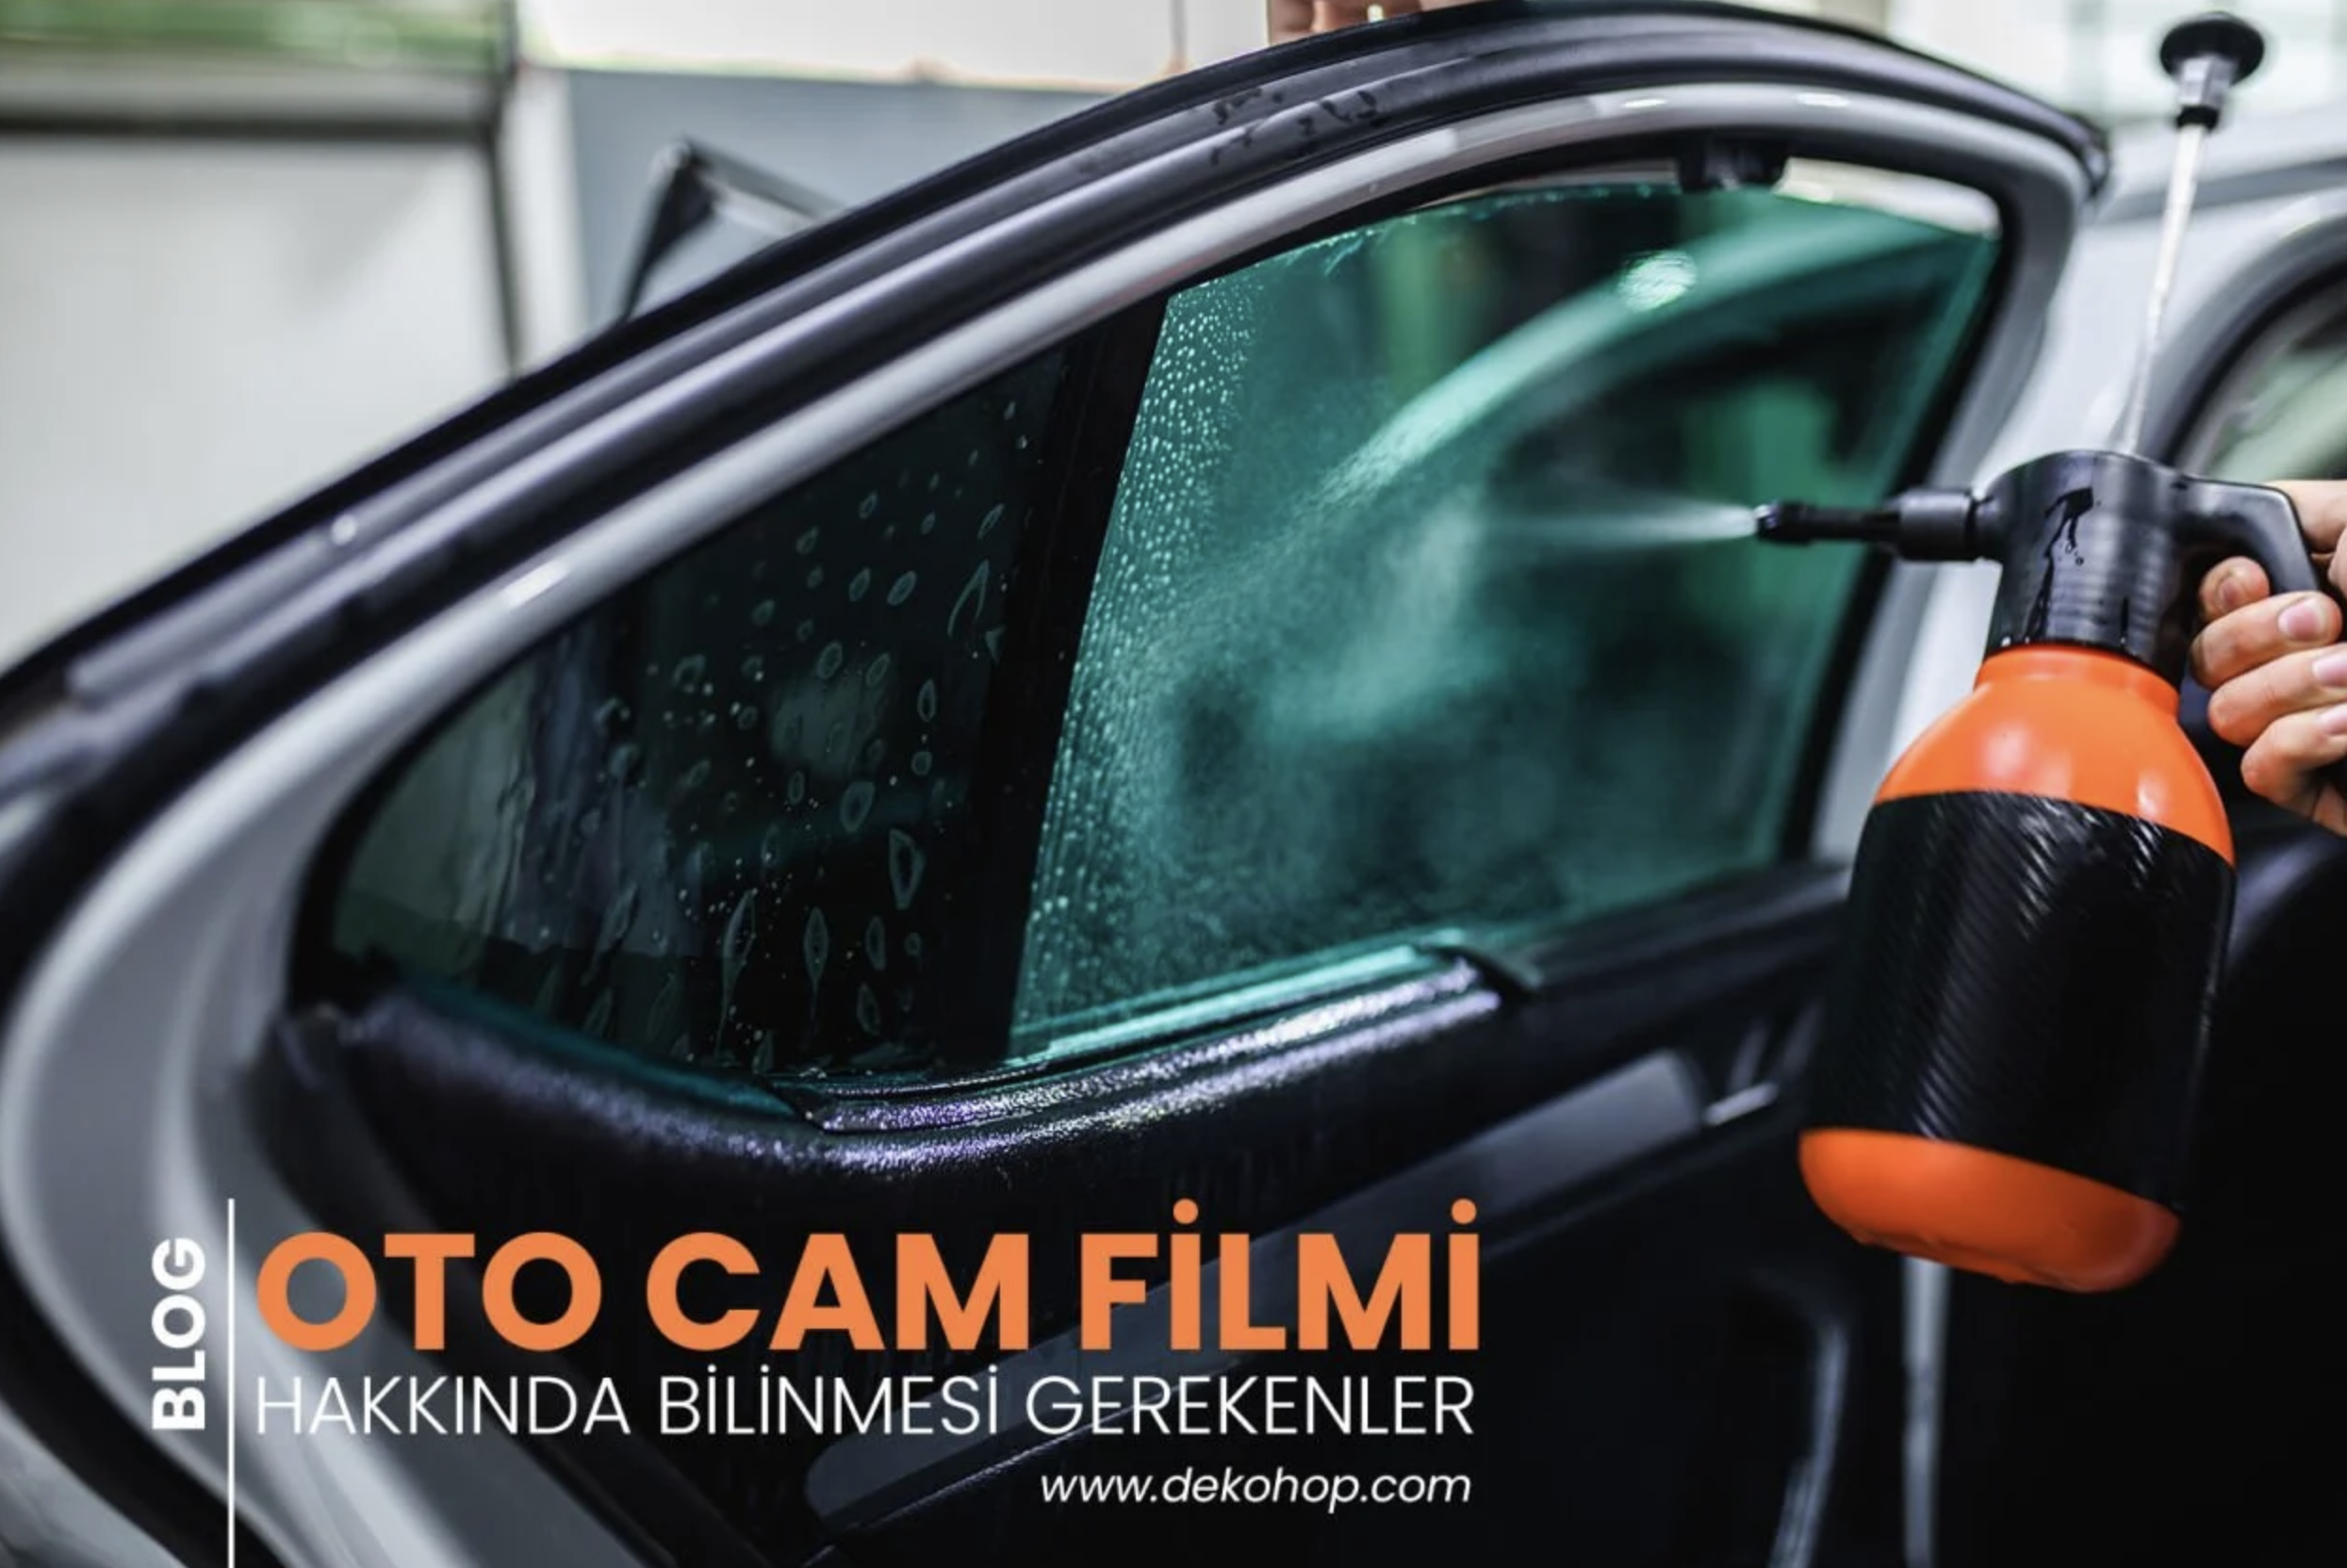 Oto Cam Filmi Hakkında Bilinmesi Gerekenler